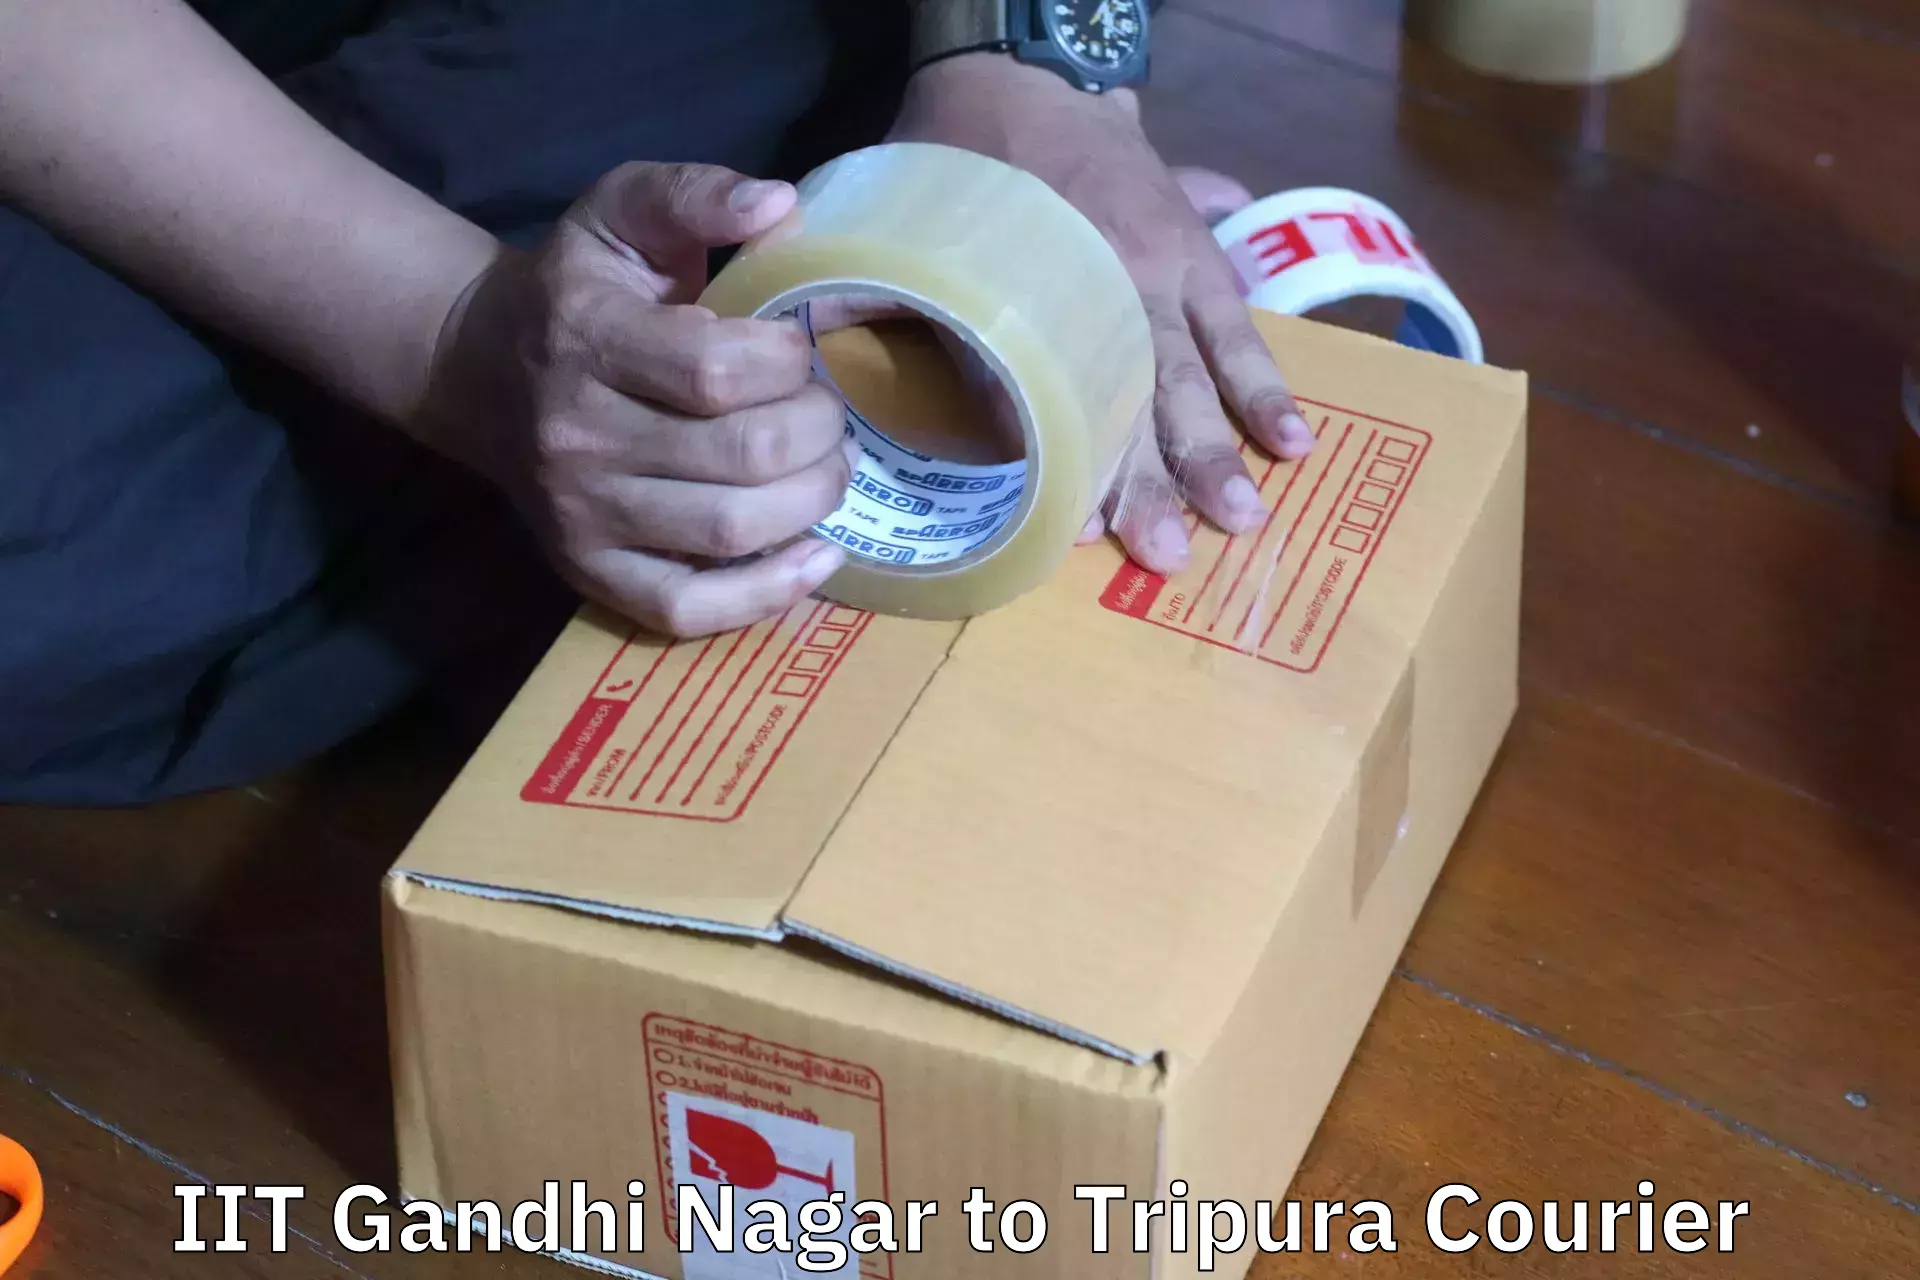 Furniture moving plans IIT Gandhi Nagar to Ambassa